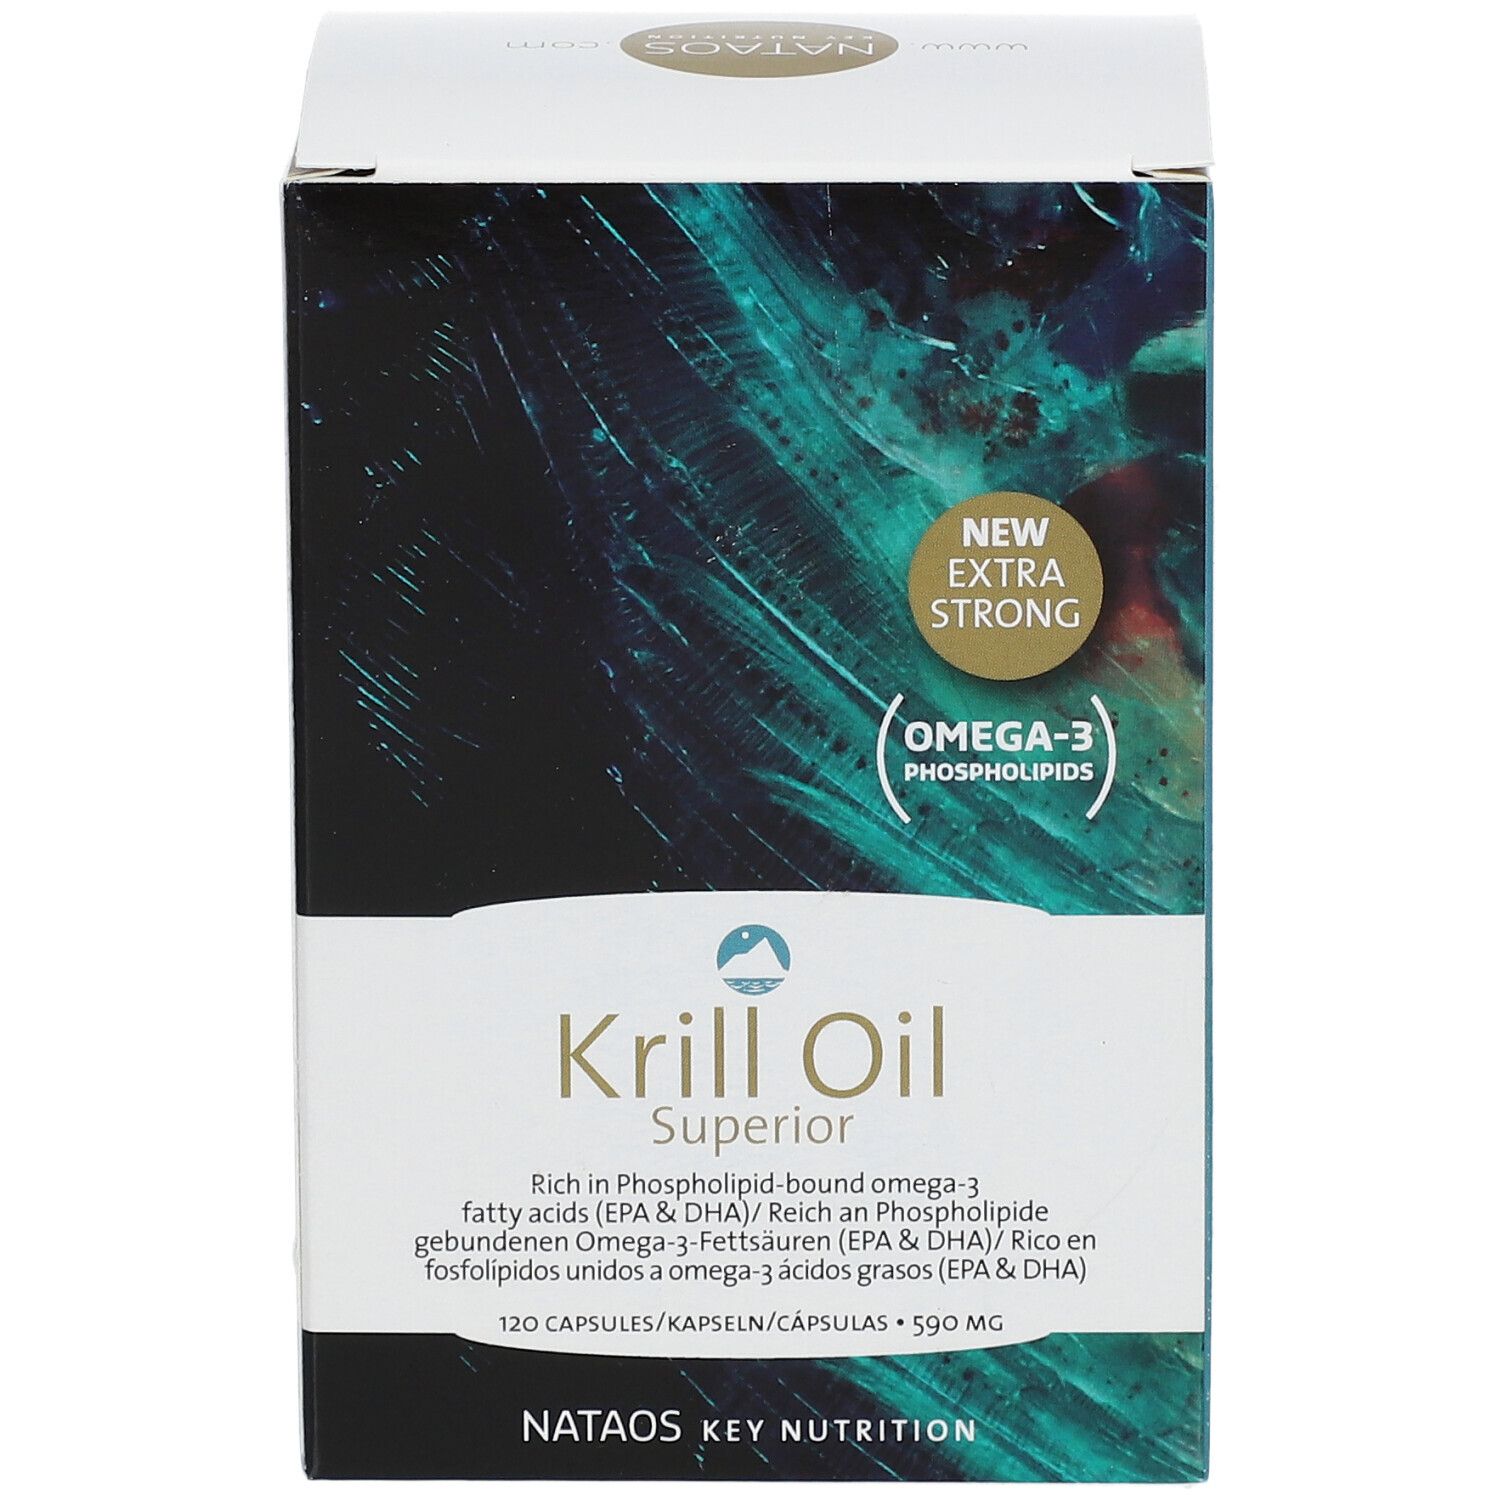 Krill Oil Superior Kapseln